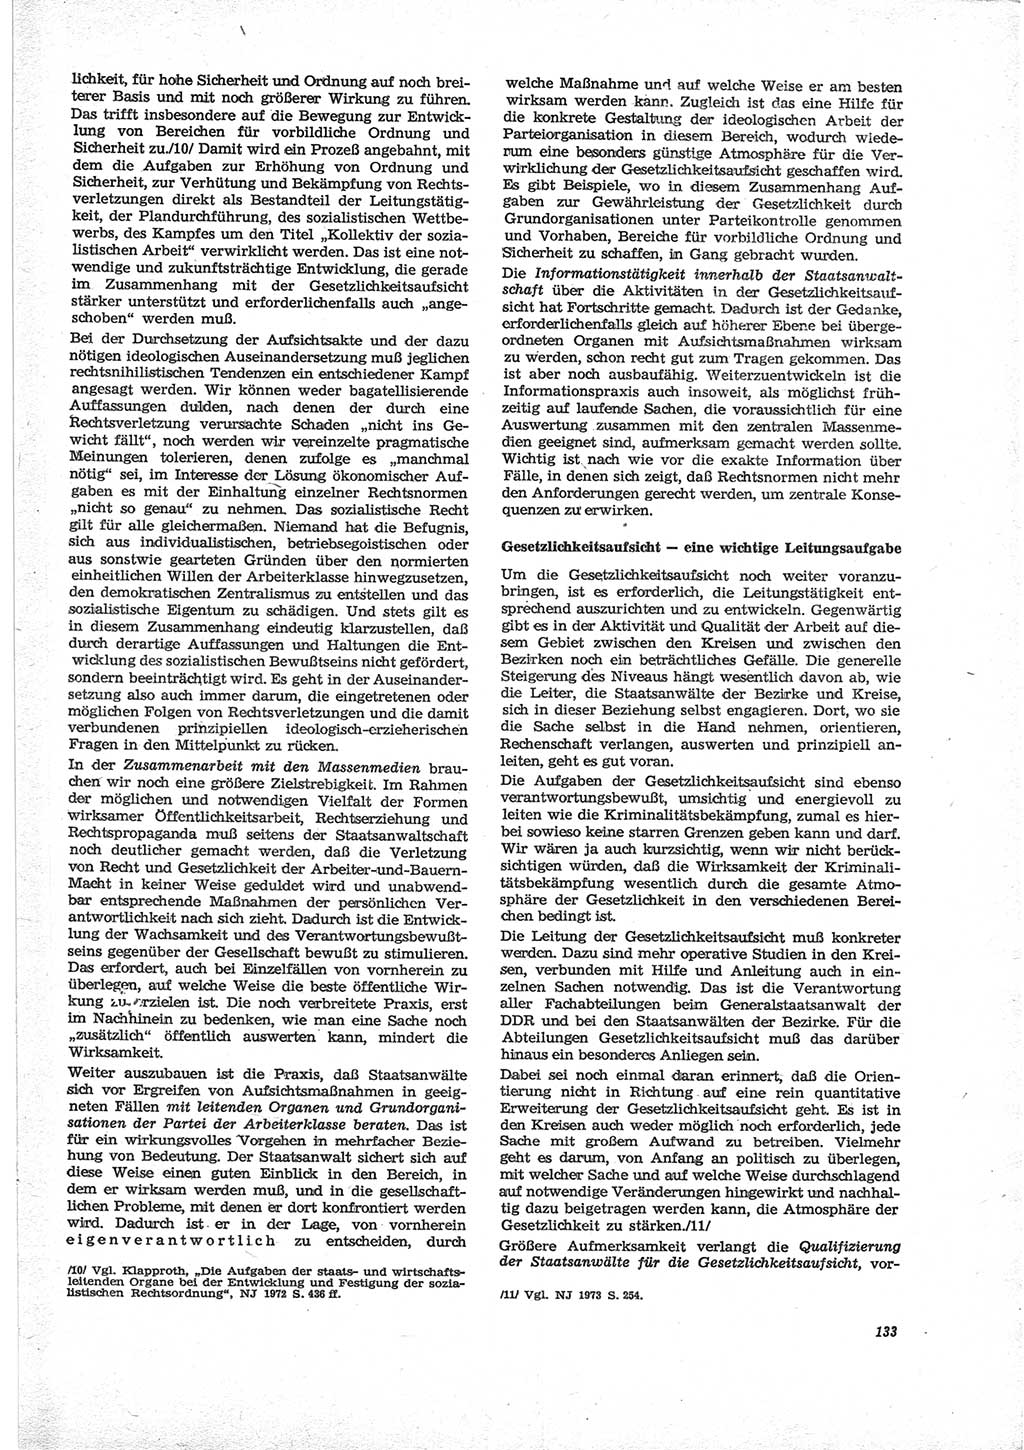 Neue Justiz (NJ), Zeitschrift für Recht und Rechtswissenschaft [Deutsche Demokratische Republik (DDR)], 28. Jahrgang 1974, Seite 133 (NJ DDR 1974, S. 133)